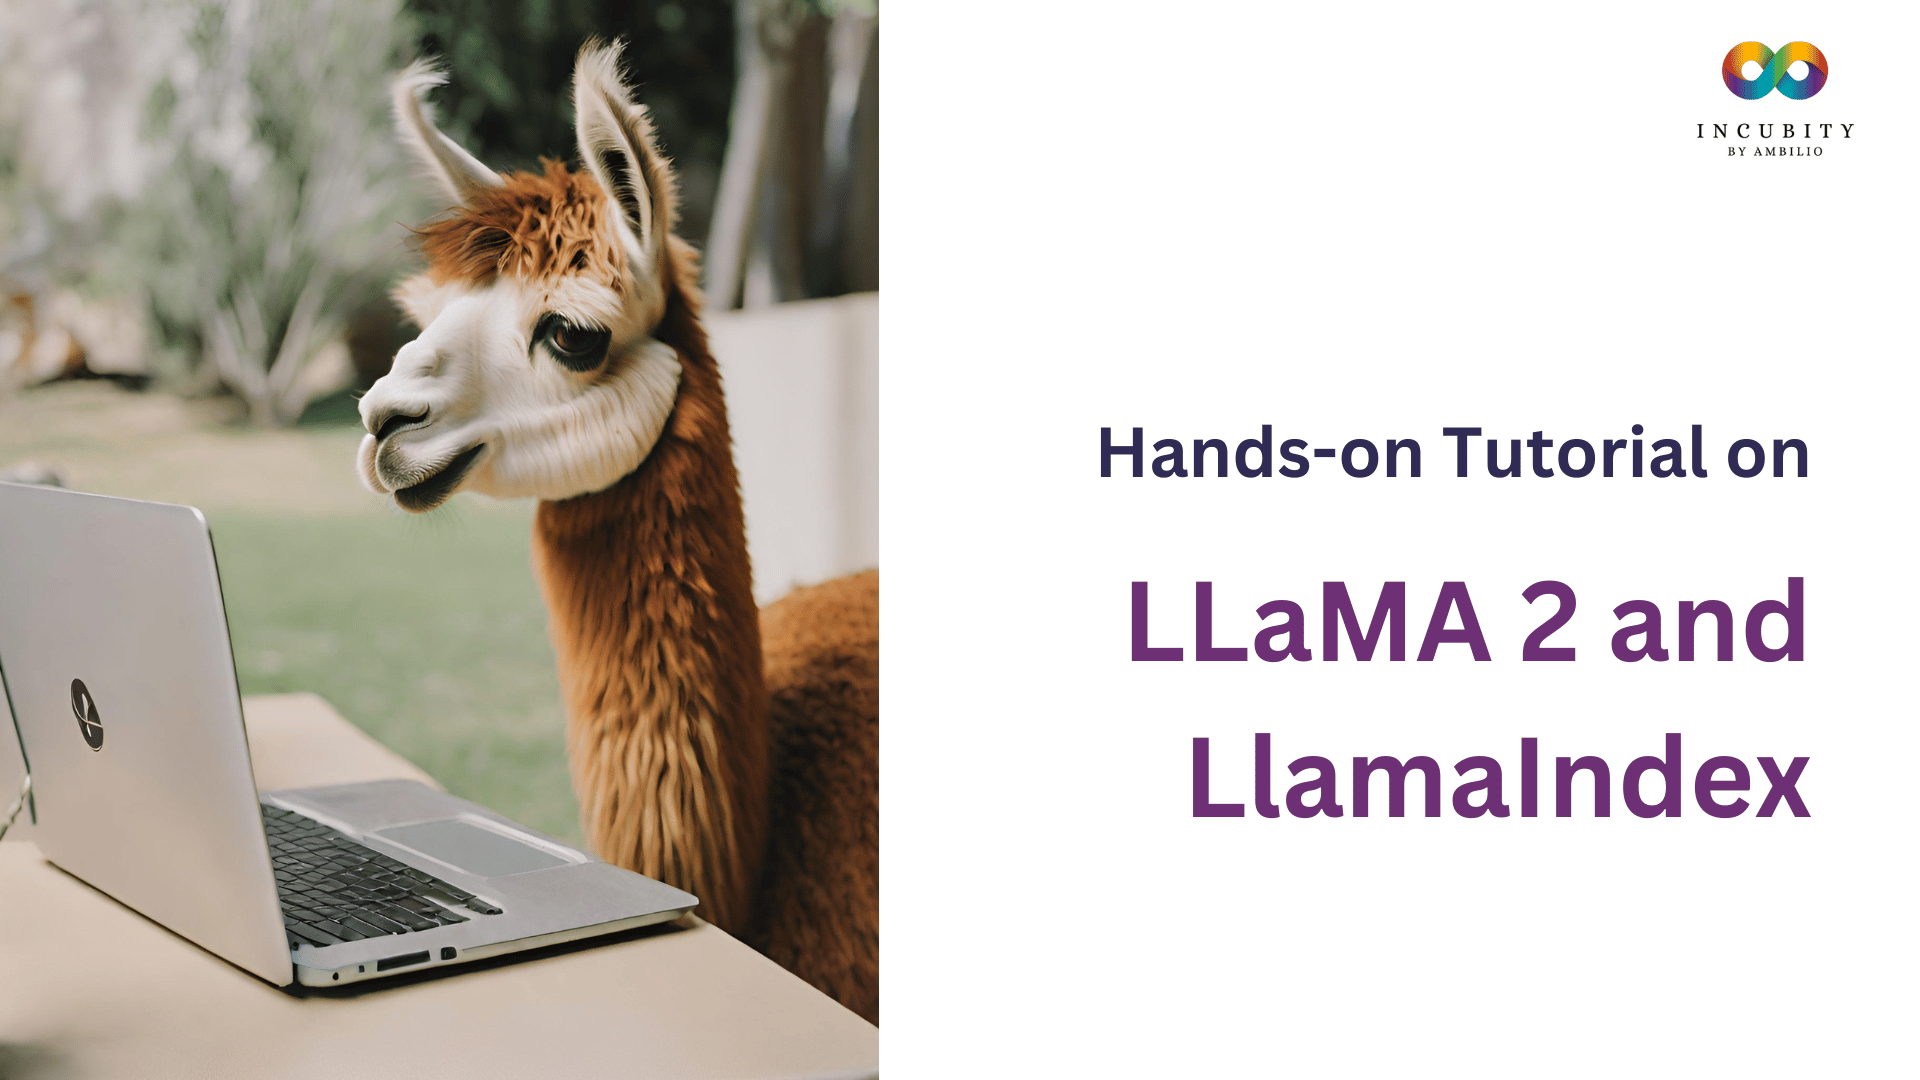 LLaMA 2 and LlamaIndex